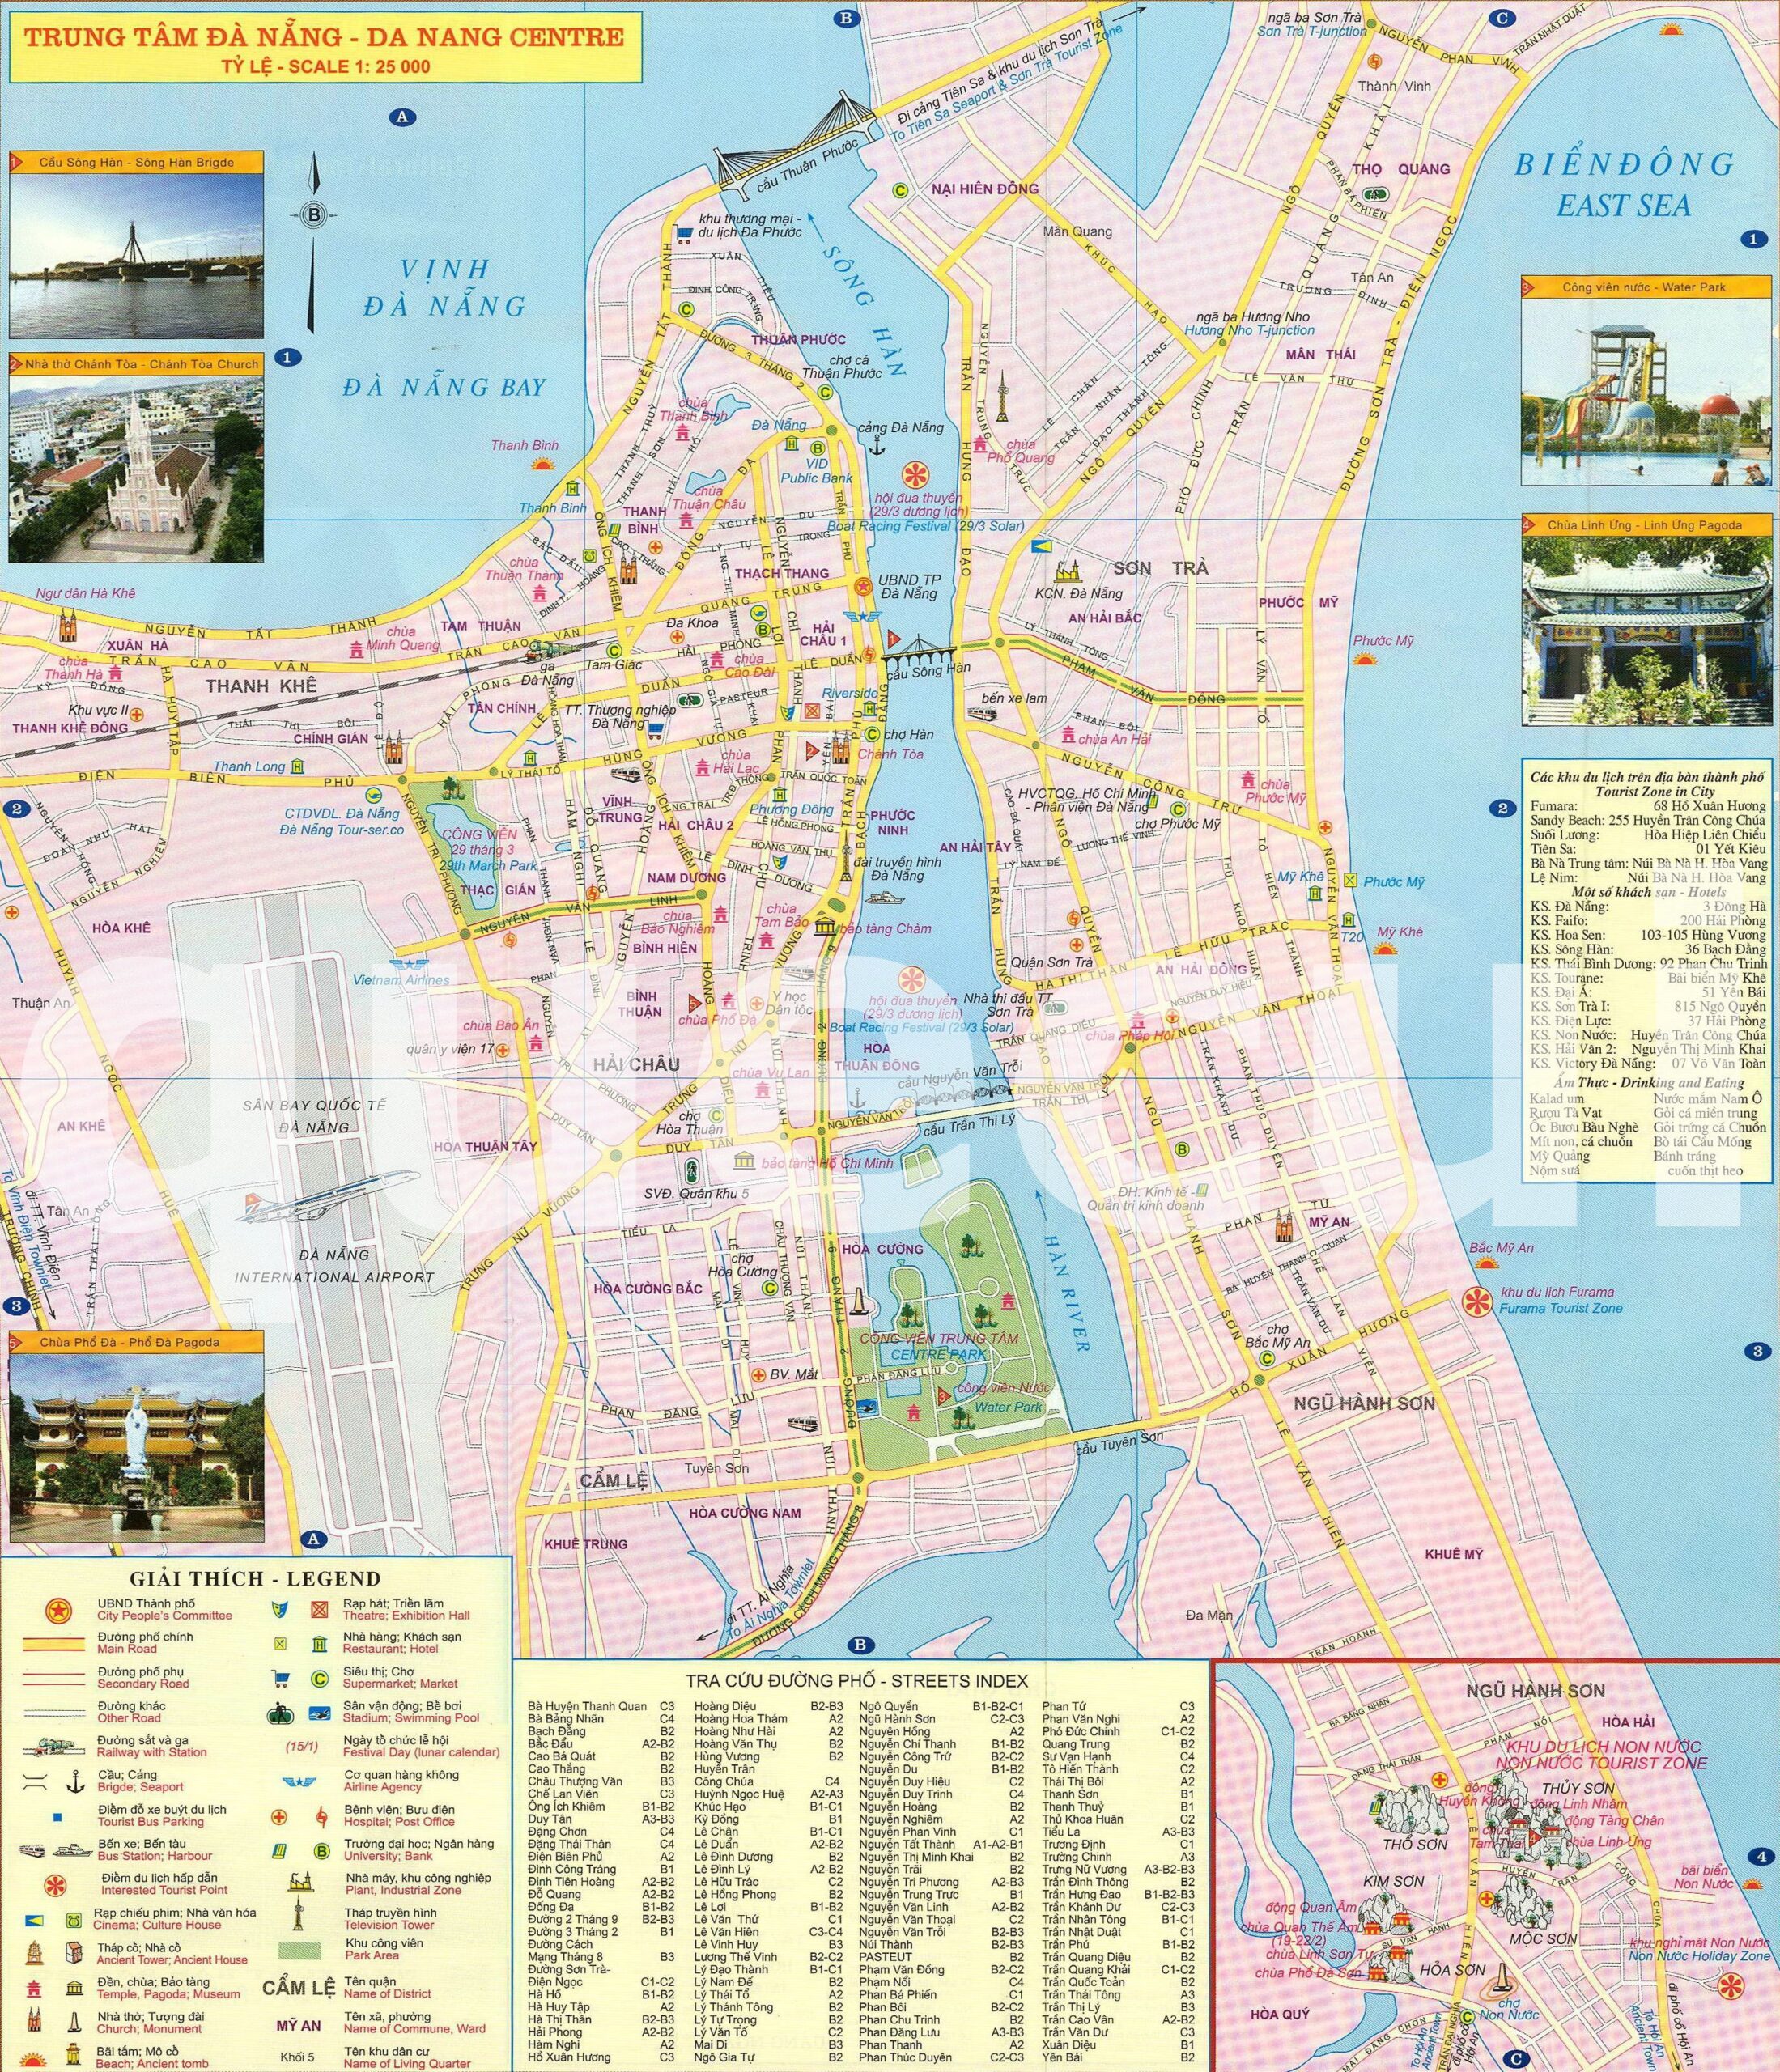 Bạn muốn tìm kiếm địa điểm và thông tin của một khu vực trong Đà Nẵng? Bản đồ hành chính Thành phố Đà Nẵng năm 2024 sẽ đáp ứng tất cả nhu cầu của bạn. Tổng hợp thông tin và hiển thị rõ ràng, bản đồ chỉ đường sẽ giúp bạn chinh phục Đà Nẵng một cách dễ dàng.